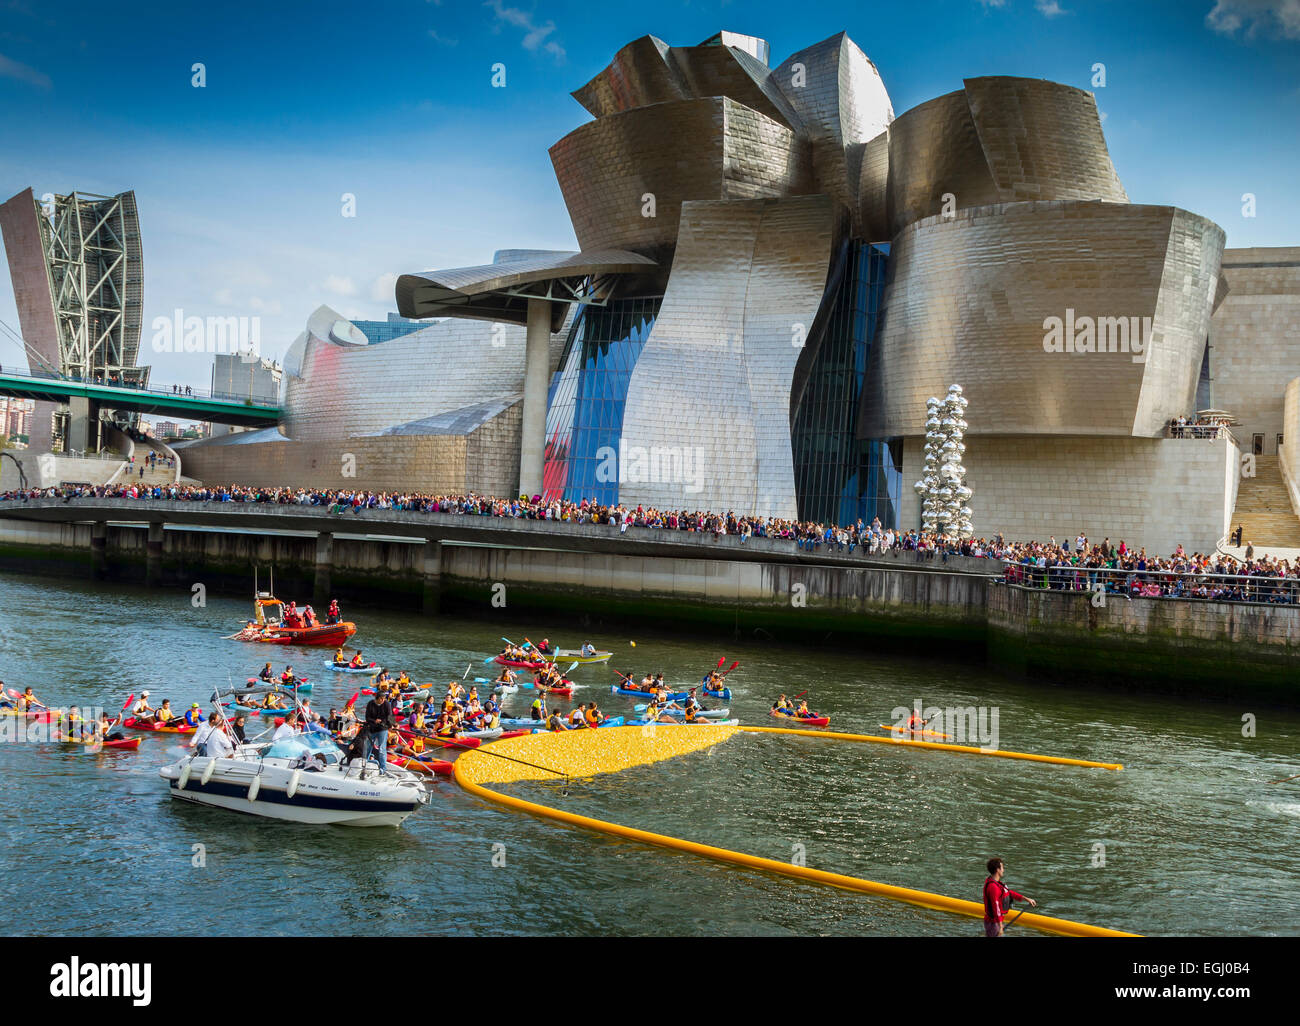 Course de canards en plastique dans la rivière Nervion. Près de Guggenheim Museum. Bilbao. Gascogne, Pays Basque, Espagne, Europe. Banque D'Images